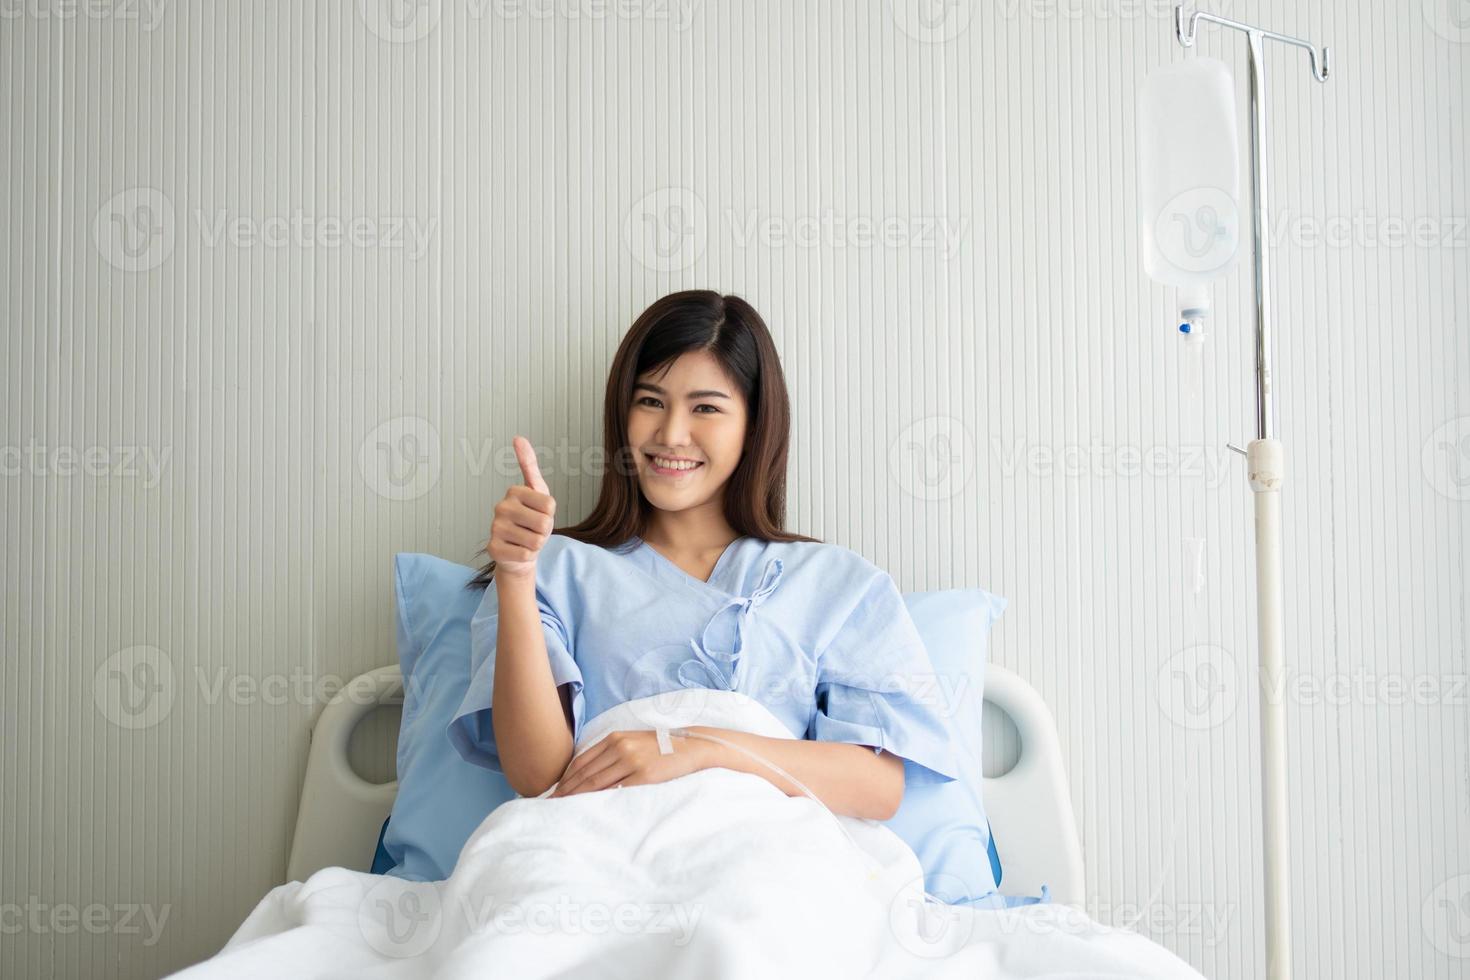 feliz paciente asiática sorrindo, deita-se na cama e levanta o polegar para mostrar confiança no tratamento. conceito de acreditar em tratamento e cobertura de seguro foto